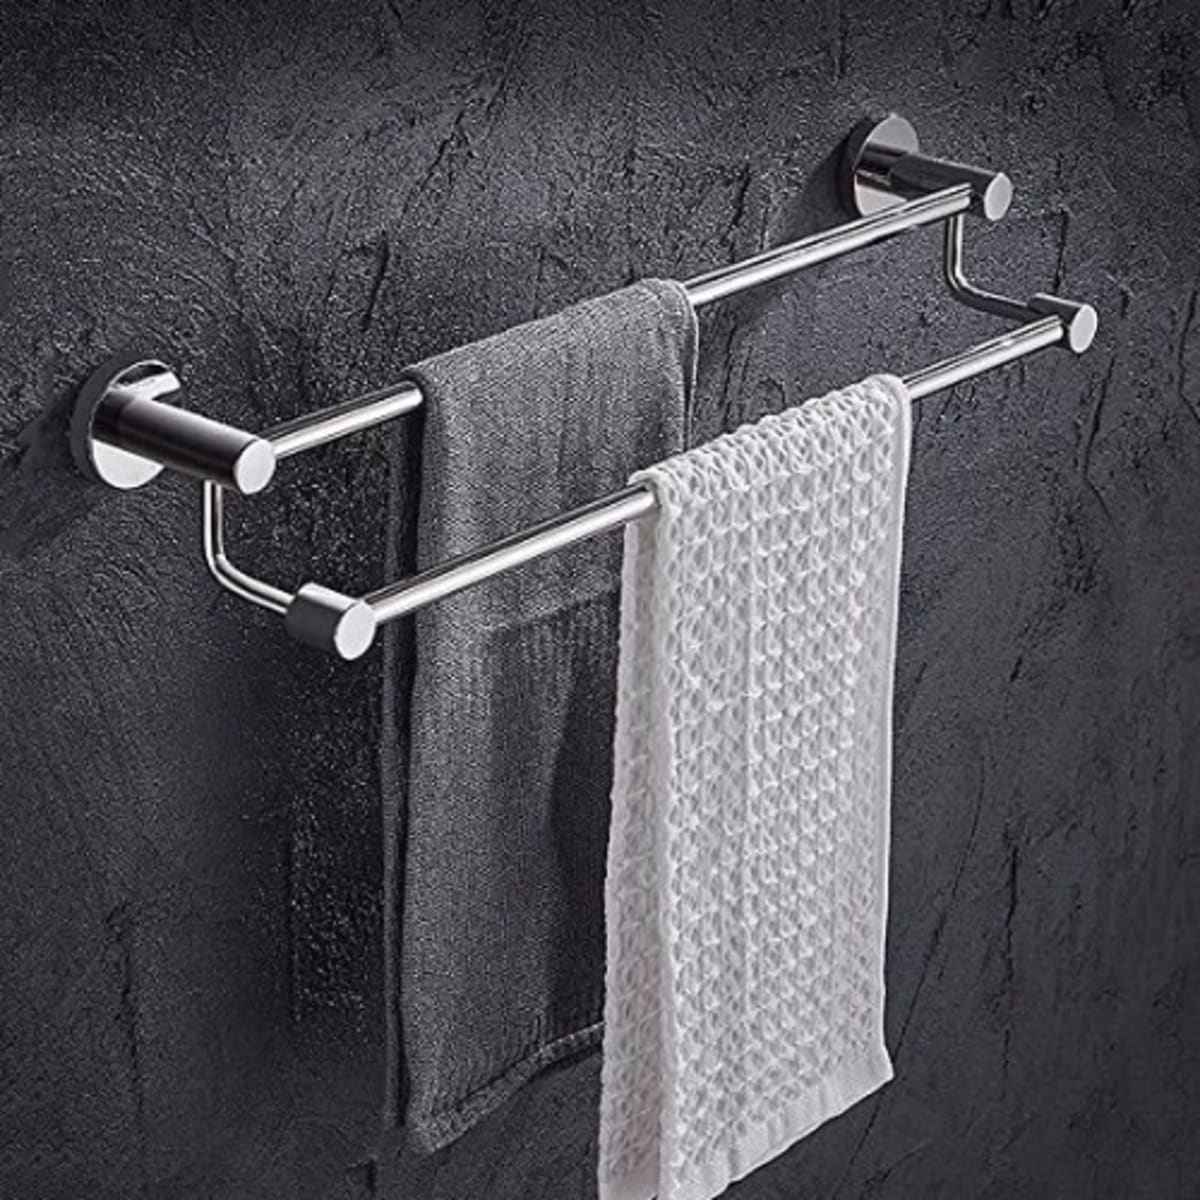 Double Towel Hanger - 70cm